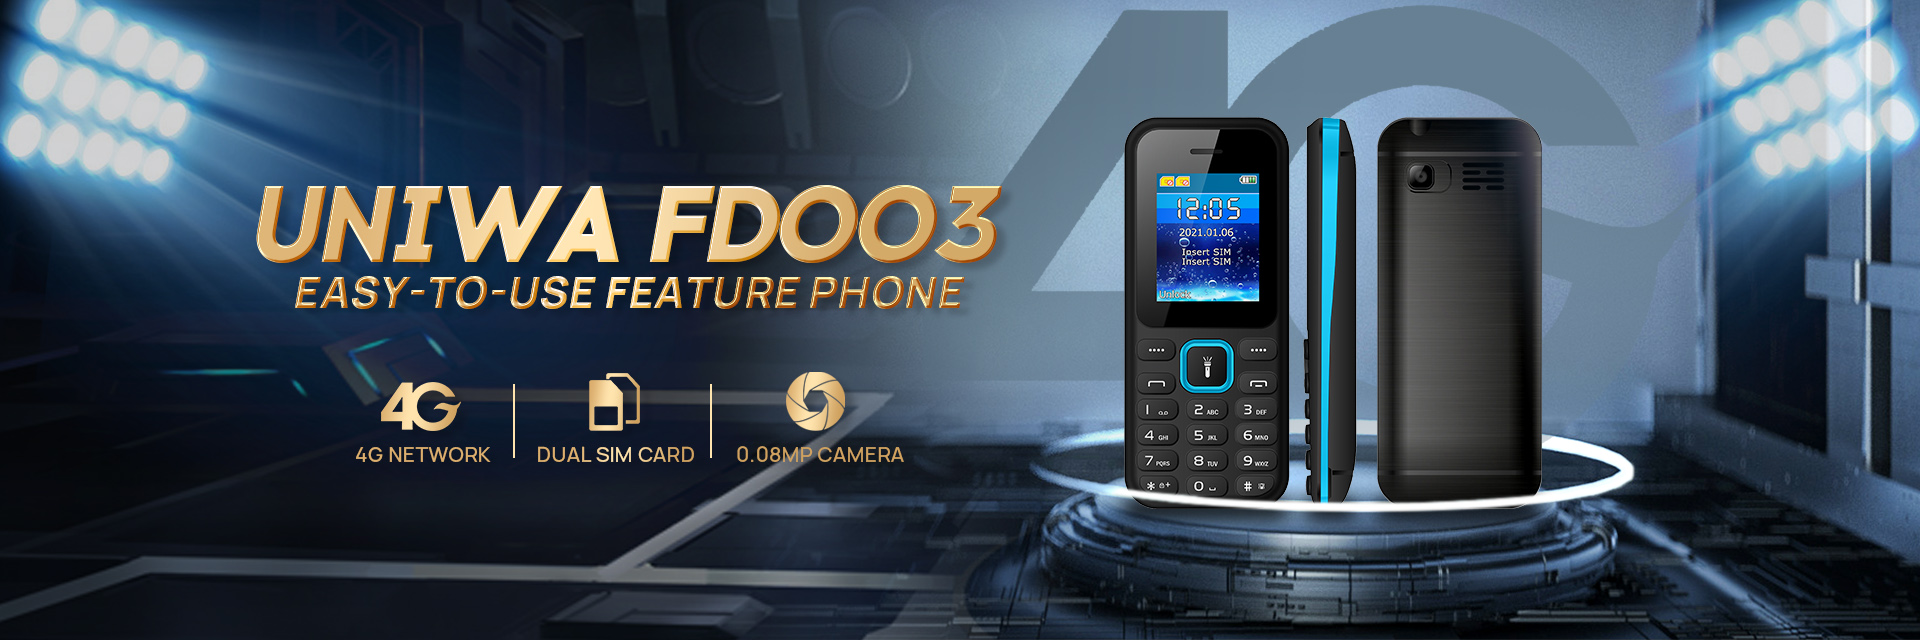 UNIWA FD003 Feature phone